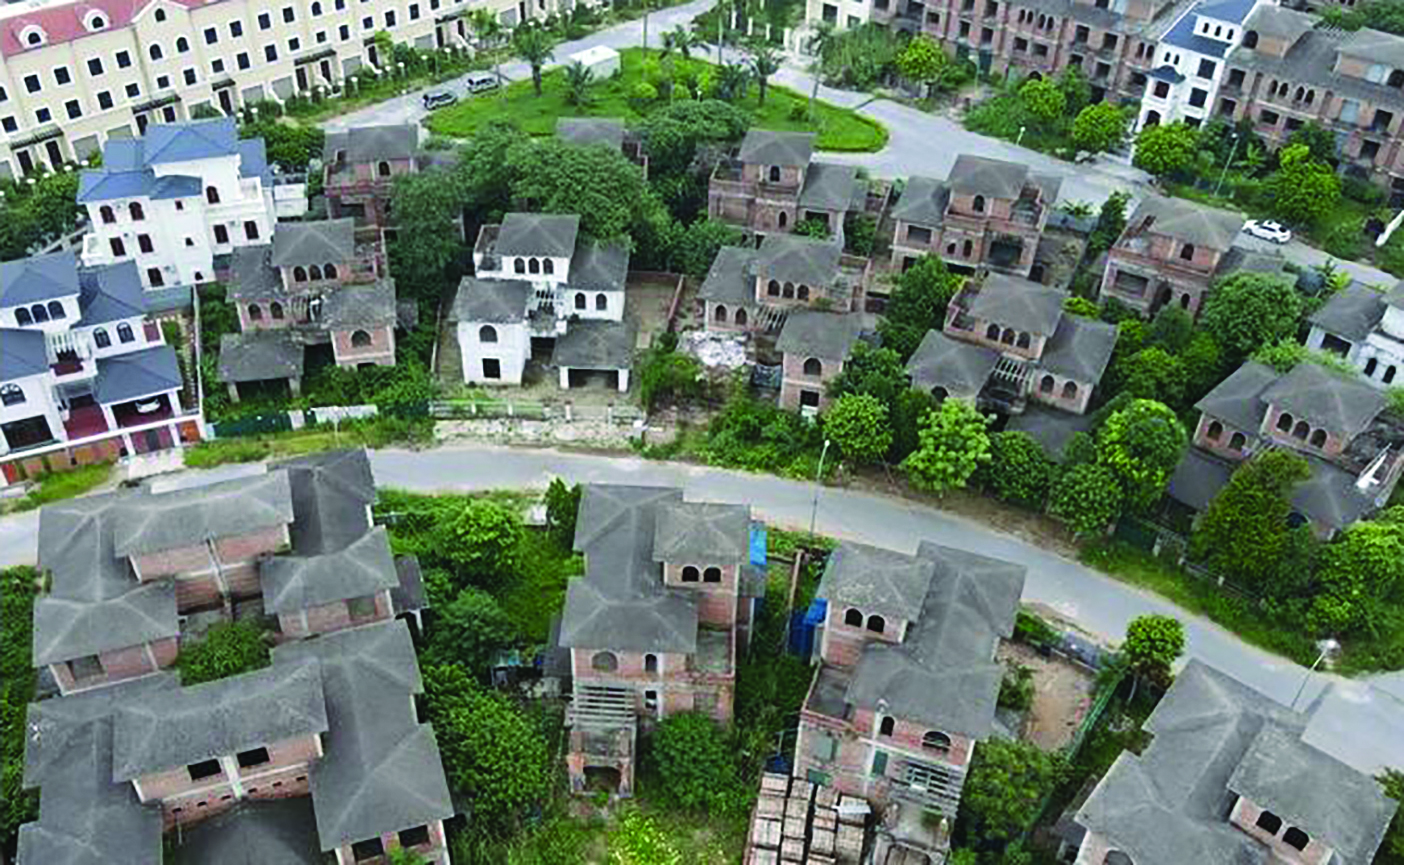  Nhiều biệt thự tại khu đô thị mới An Khánh, Hoài Đức, Hà Nội bỏ hoang. Ảnh: Trần Kháng